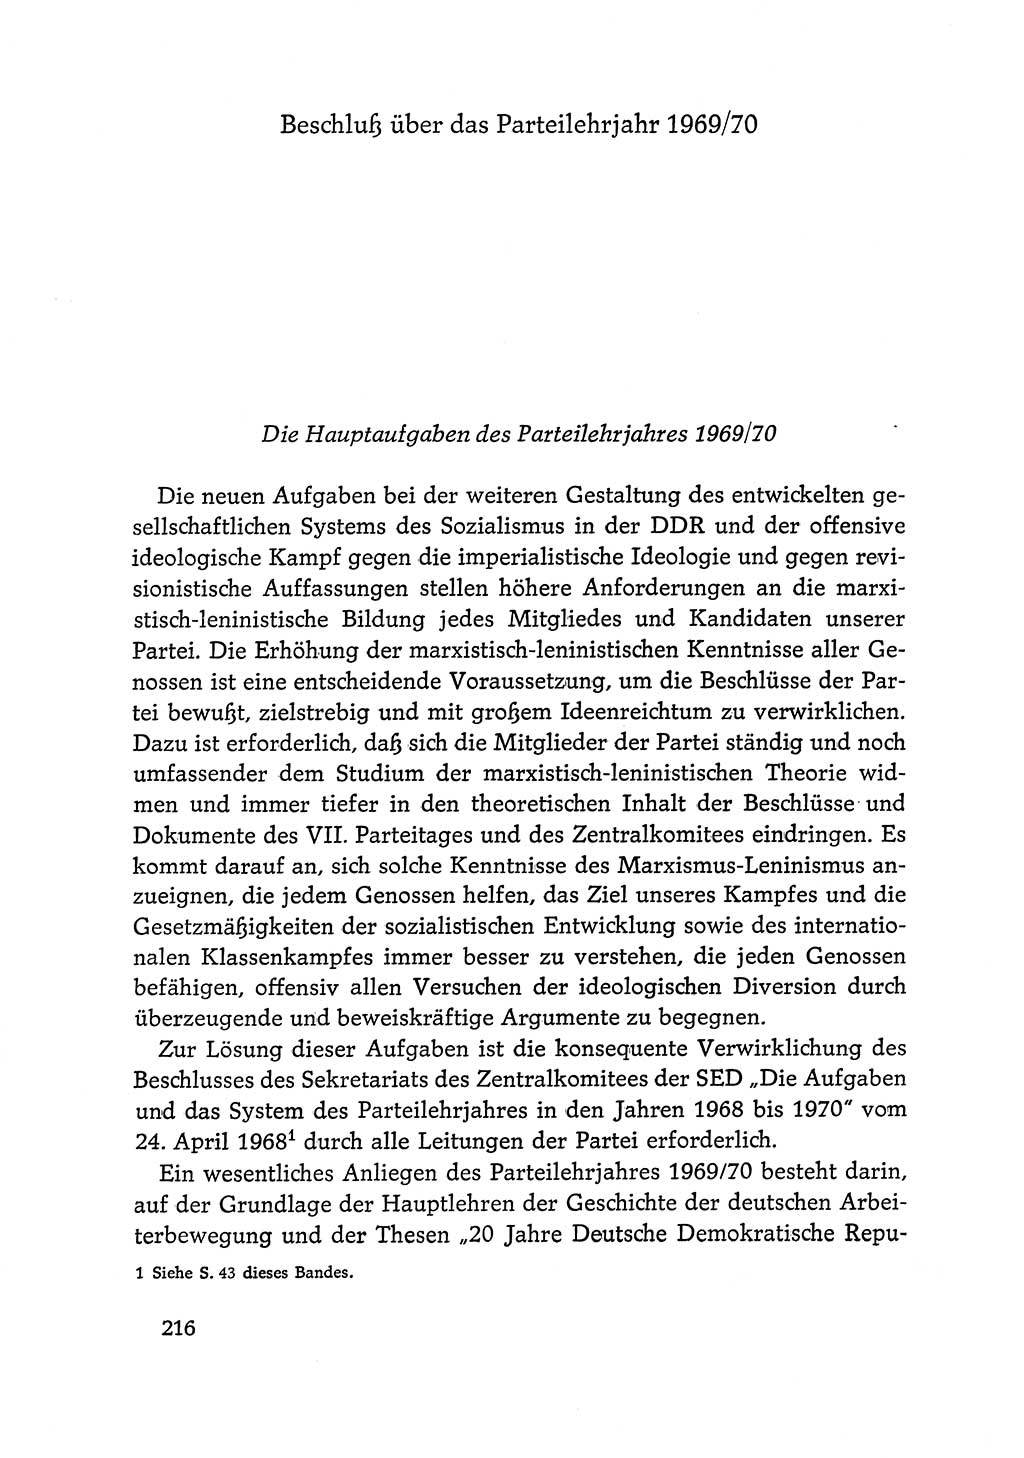 Dokumente der Sozialistischen Einheitspartei Deutschlands (SED) [Deutsche Demokratische Republik (DDR)] 1968-1969, Seite 216 (Dok. SED DDR 1968-1969, S. 216)